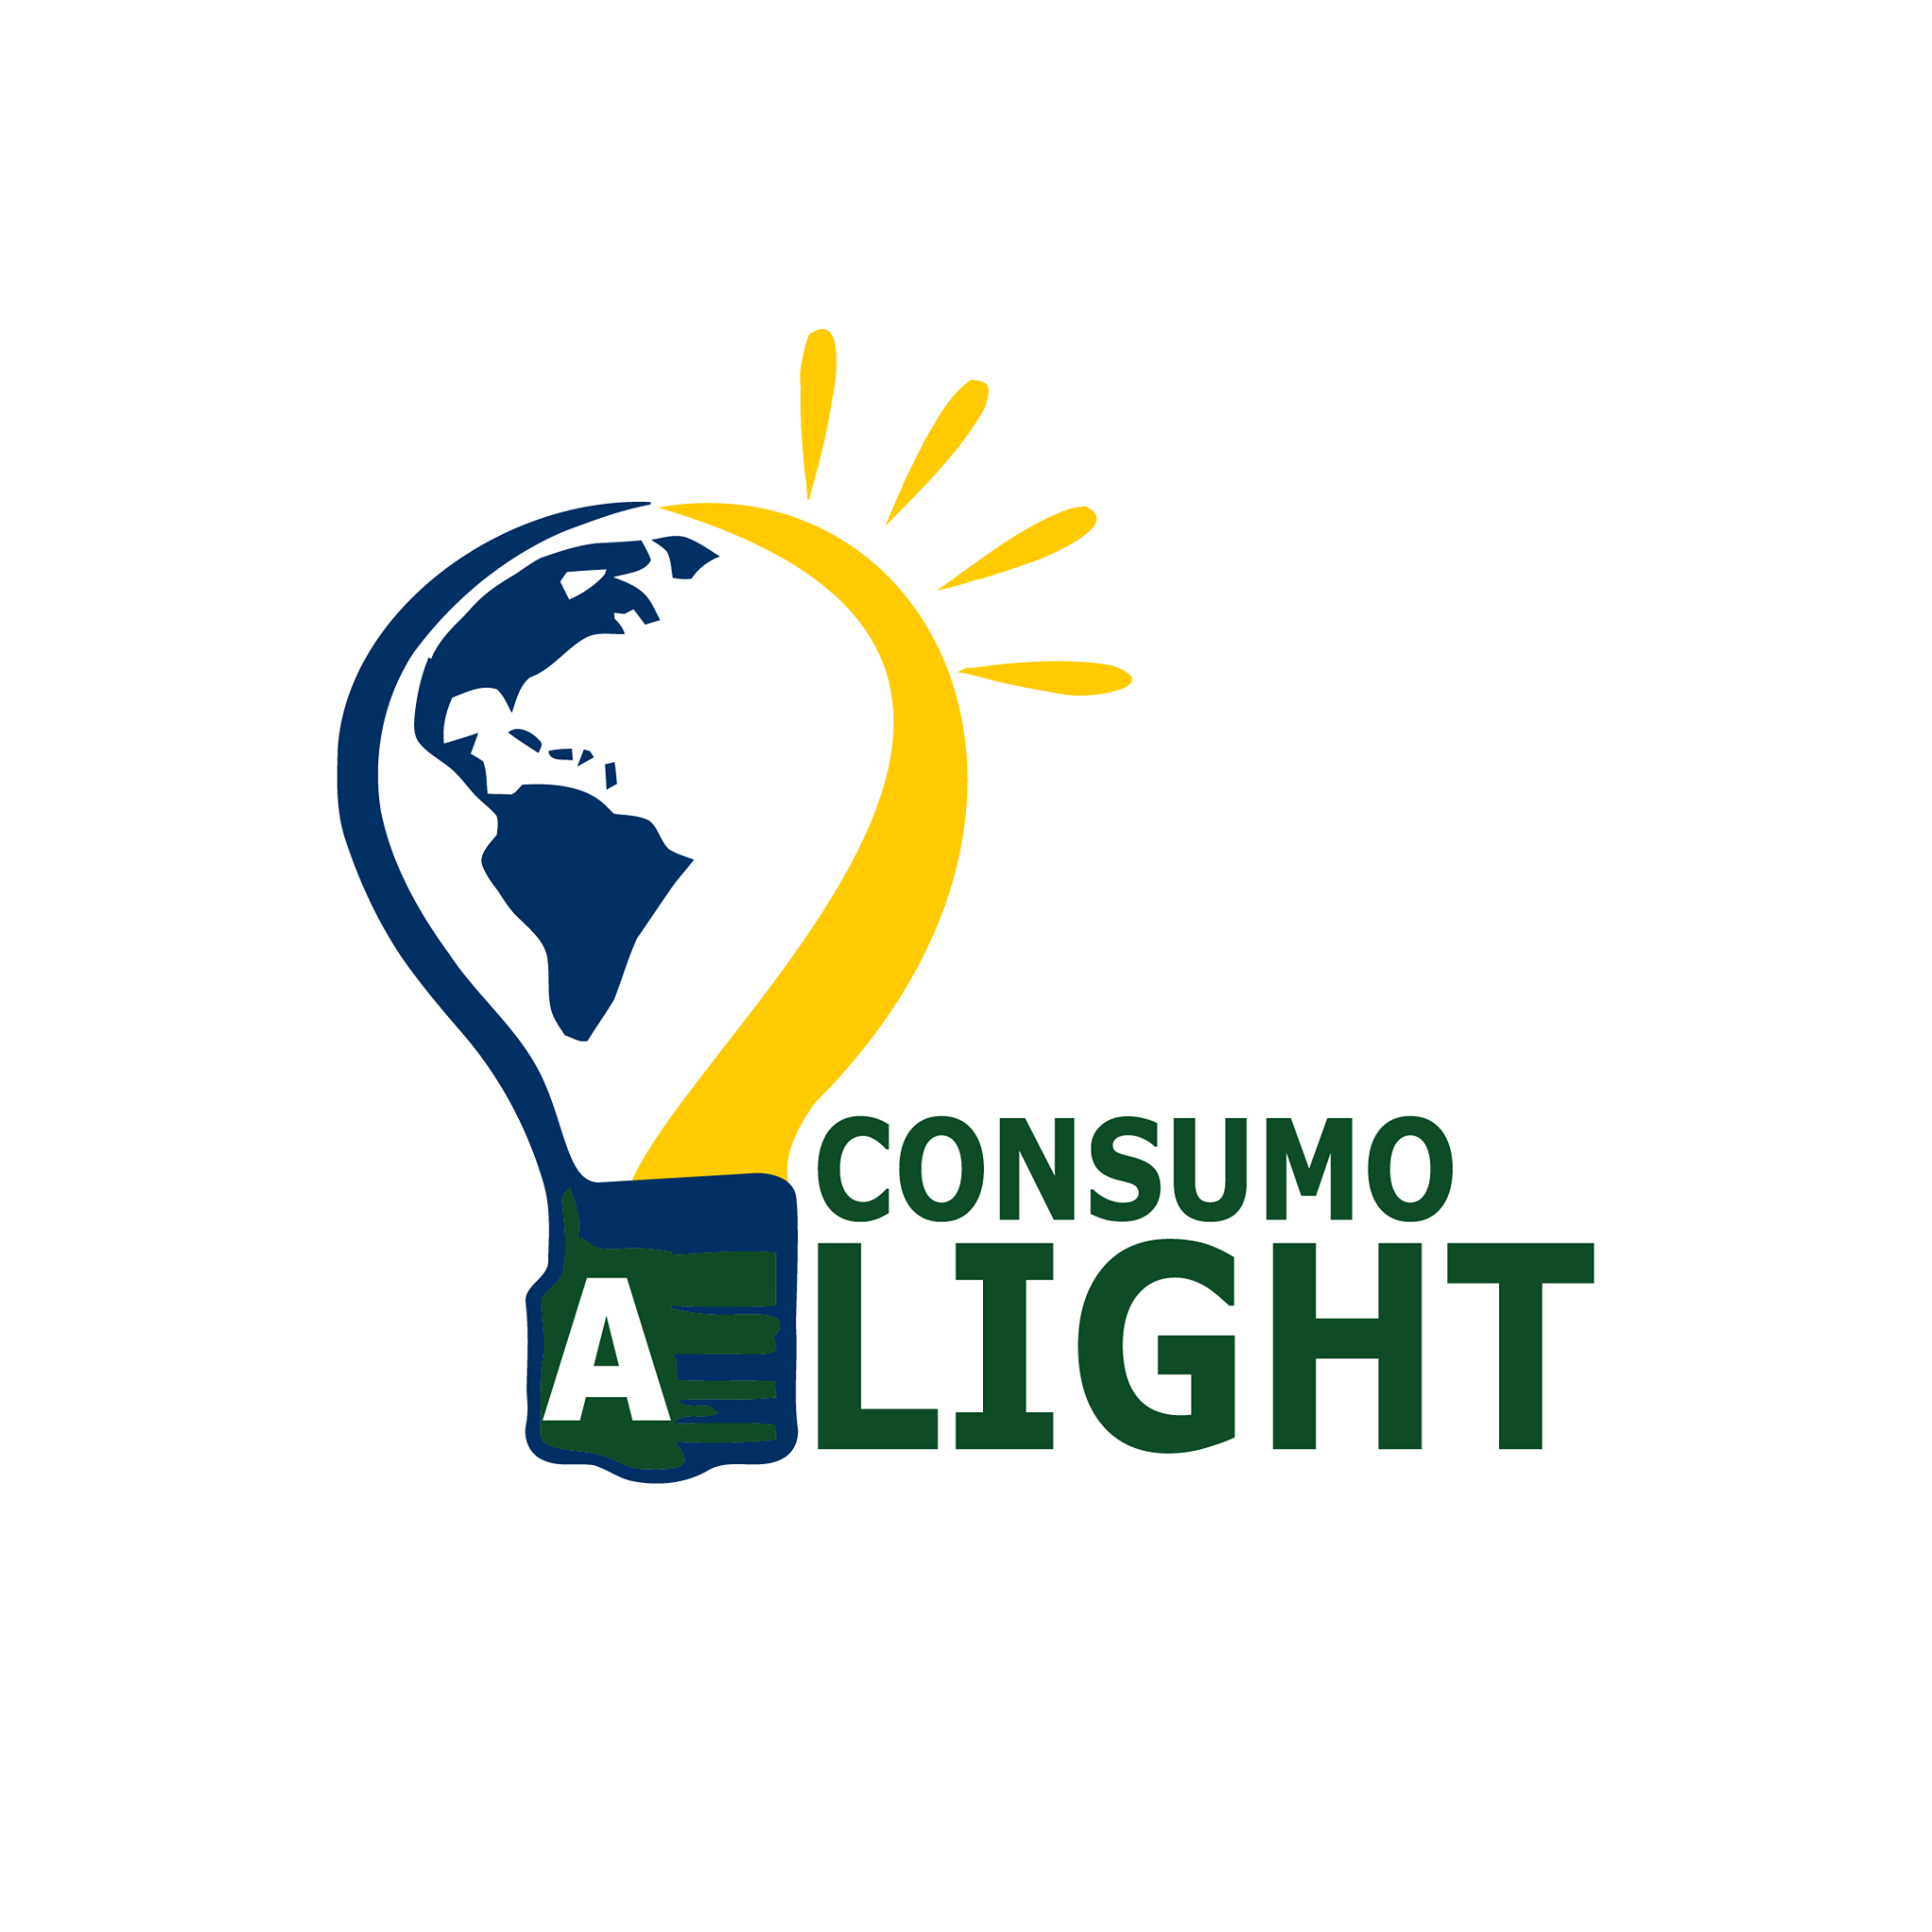 Logomarca Consumo Light, com fundo branco e escrita verde, além da lampada acesa com as cores da bandeira do Brasil.